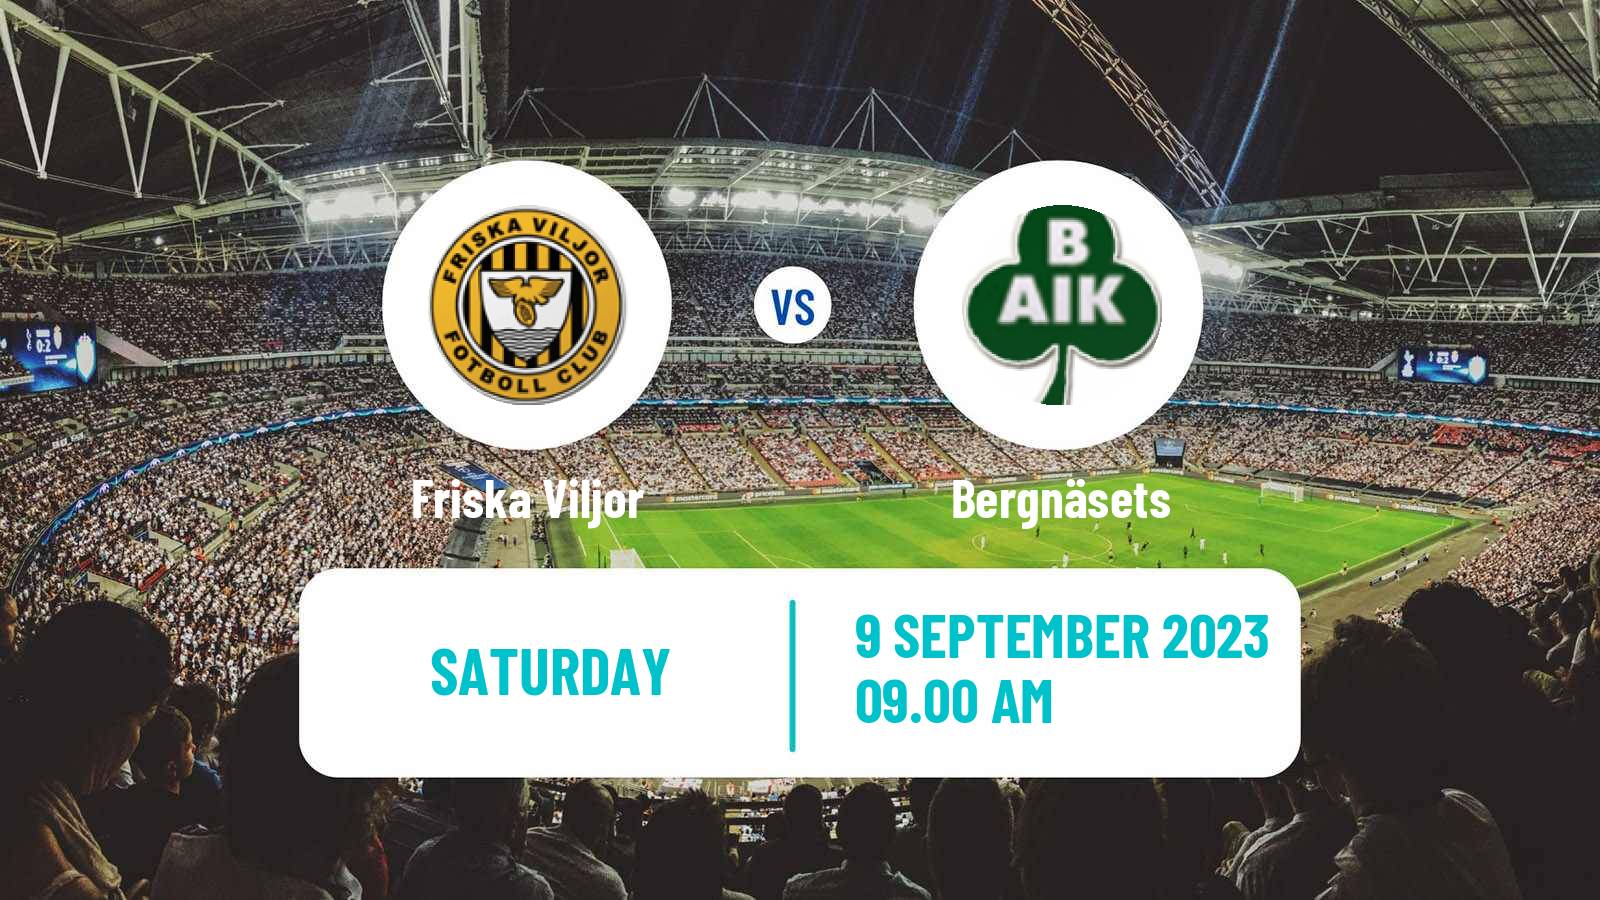 Soccer Swedish Division 2 - Norrland Friska Viljor - Bergnäsets